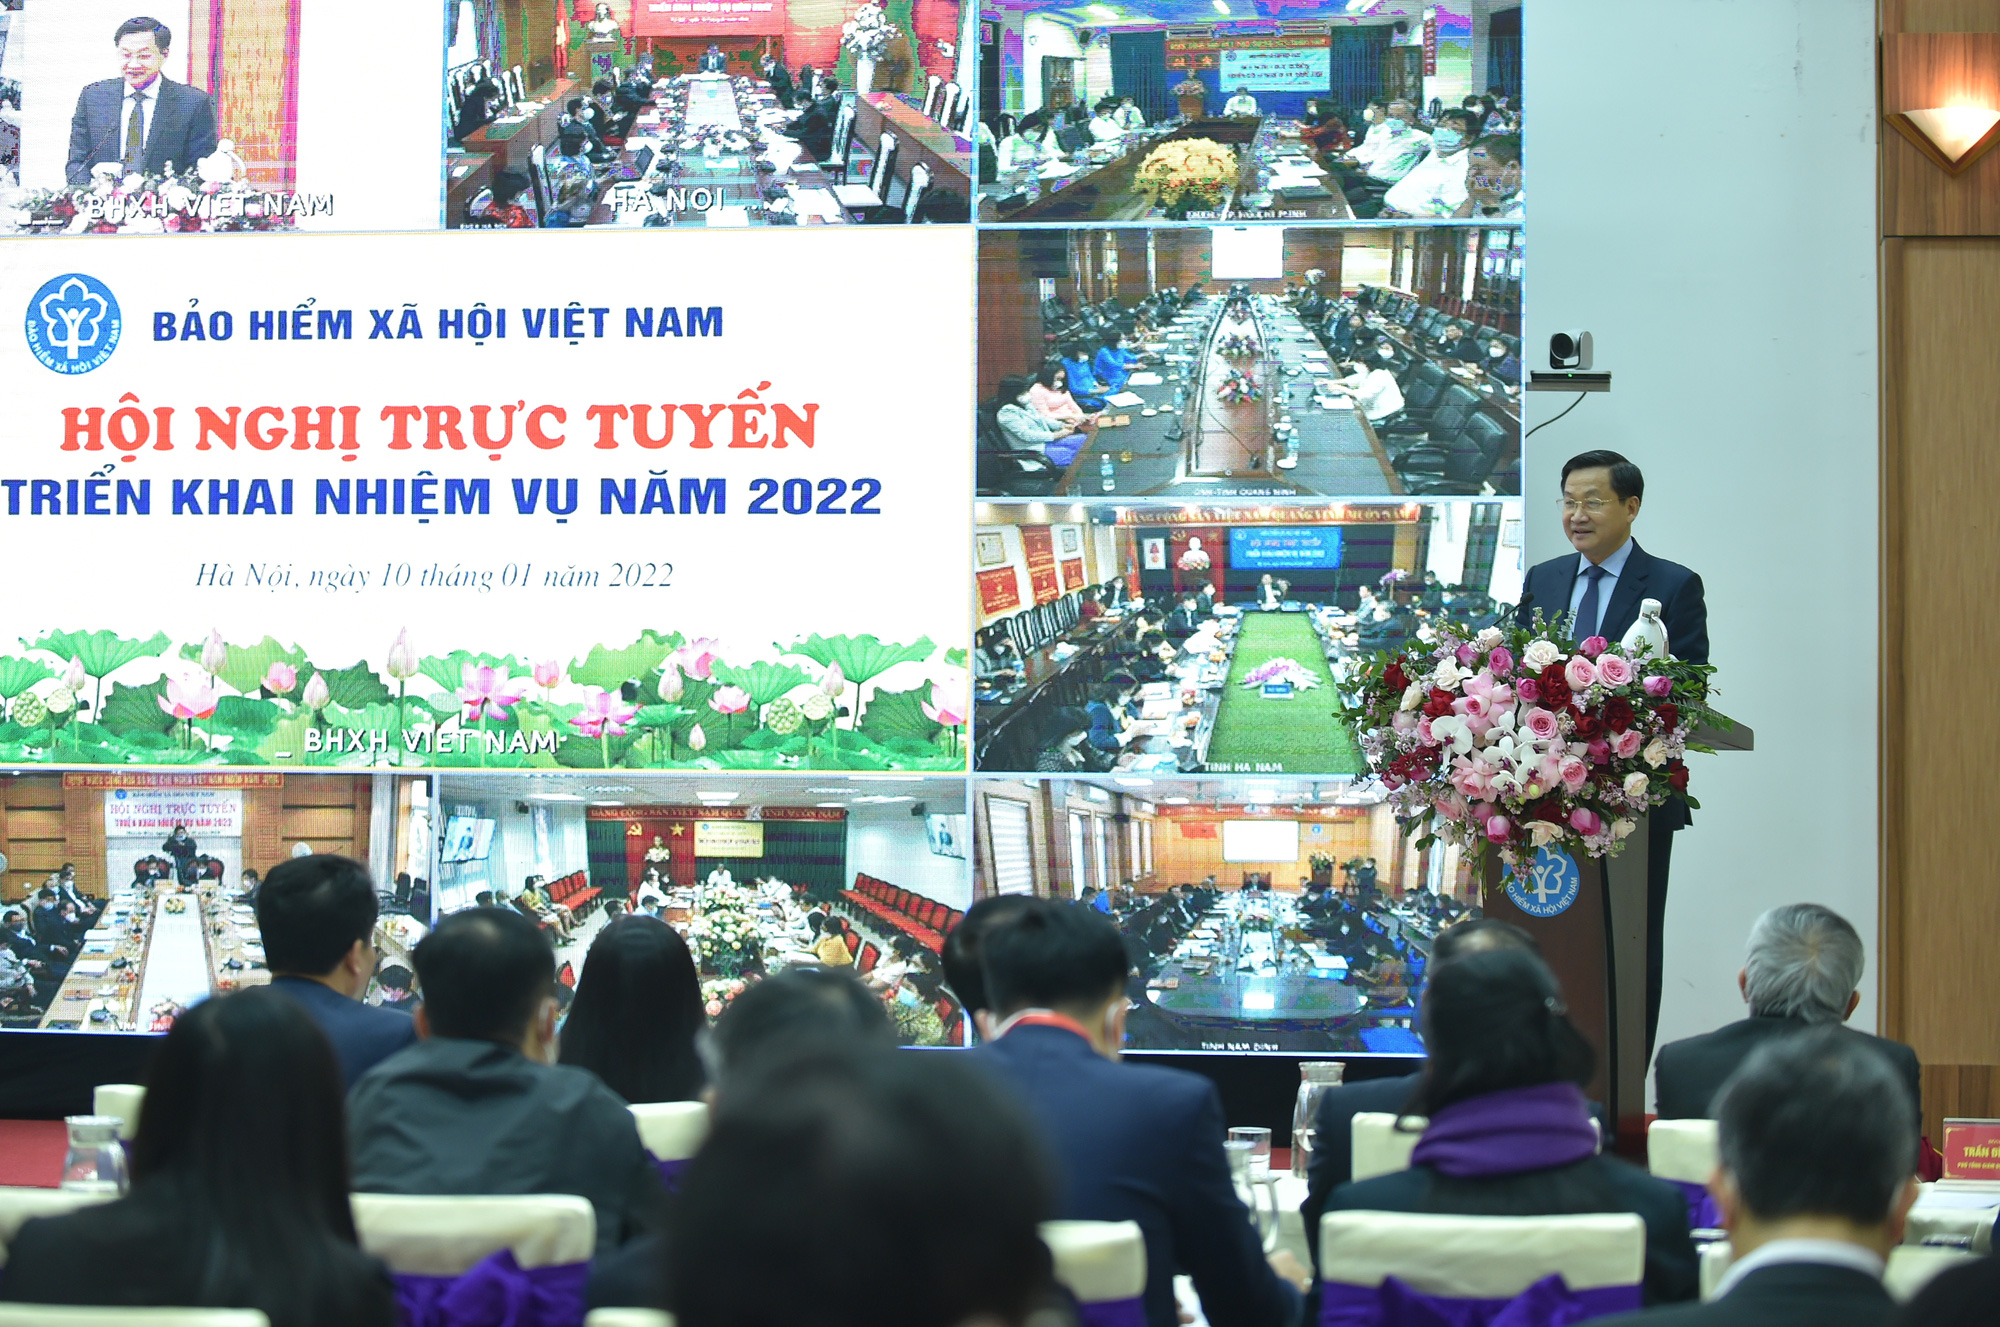 BHXH Việt Nam phải quản lý các quỹ BHXH, BHYT, bảo hiểm thất nghiệp an toàn, bền vững và hiệu quả - Ảnh 2.